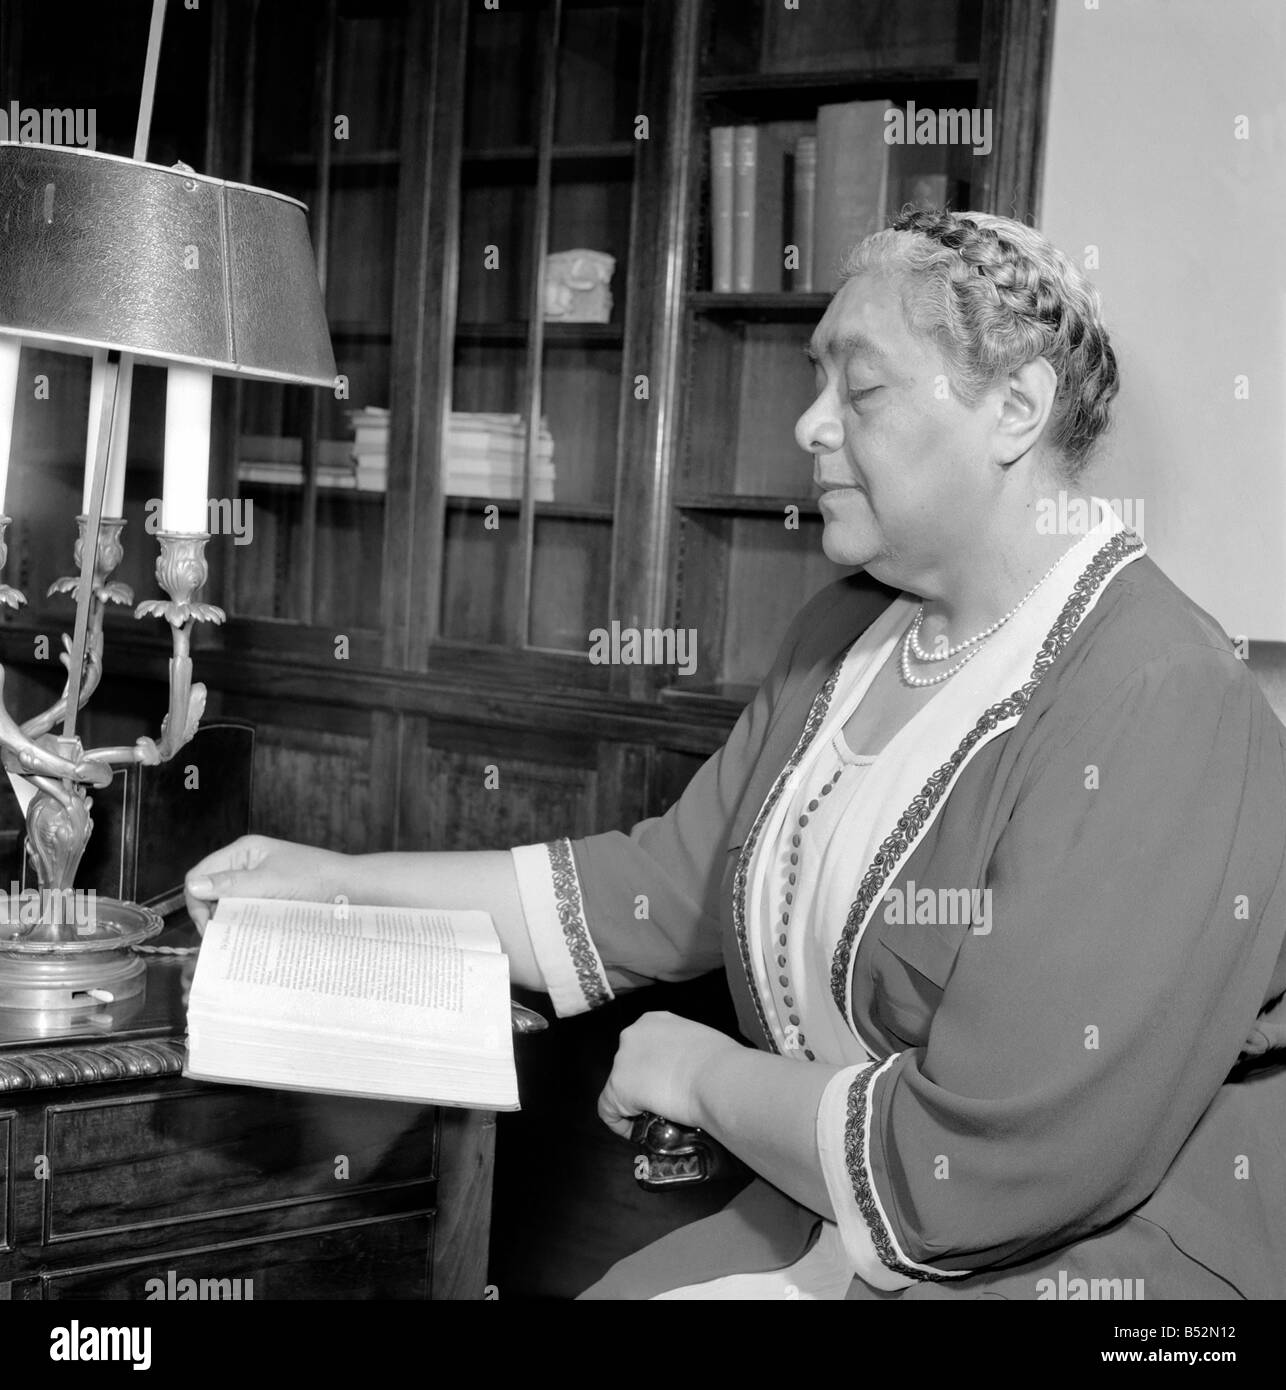 Die Königin Menschen von der Tongas. Königin Salote in London während der Krönung von Königin Elizabeth II. im Jahr 1953. Es war ein regnerischer Tag und Königin Salote weigerte sich, die oben auf ihren Wagen zu schließen, um auf eine höhere Rangfolge Person oder Superior nach Tonga benutzerdefinierte respektieren. Es ist wegen dieses demütige Geste, die sie noch in von Menschen Erinnerung ist, die es gab, oder wer beobachtet hatte, die Veranstaltung auf dem Schwarz-Weiß Fernseher eingestellt. Juni 1953 D2926 Stockfoto